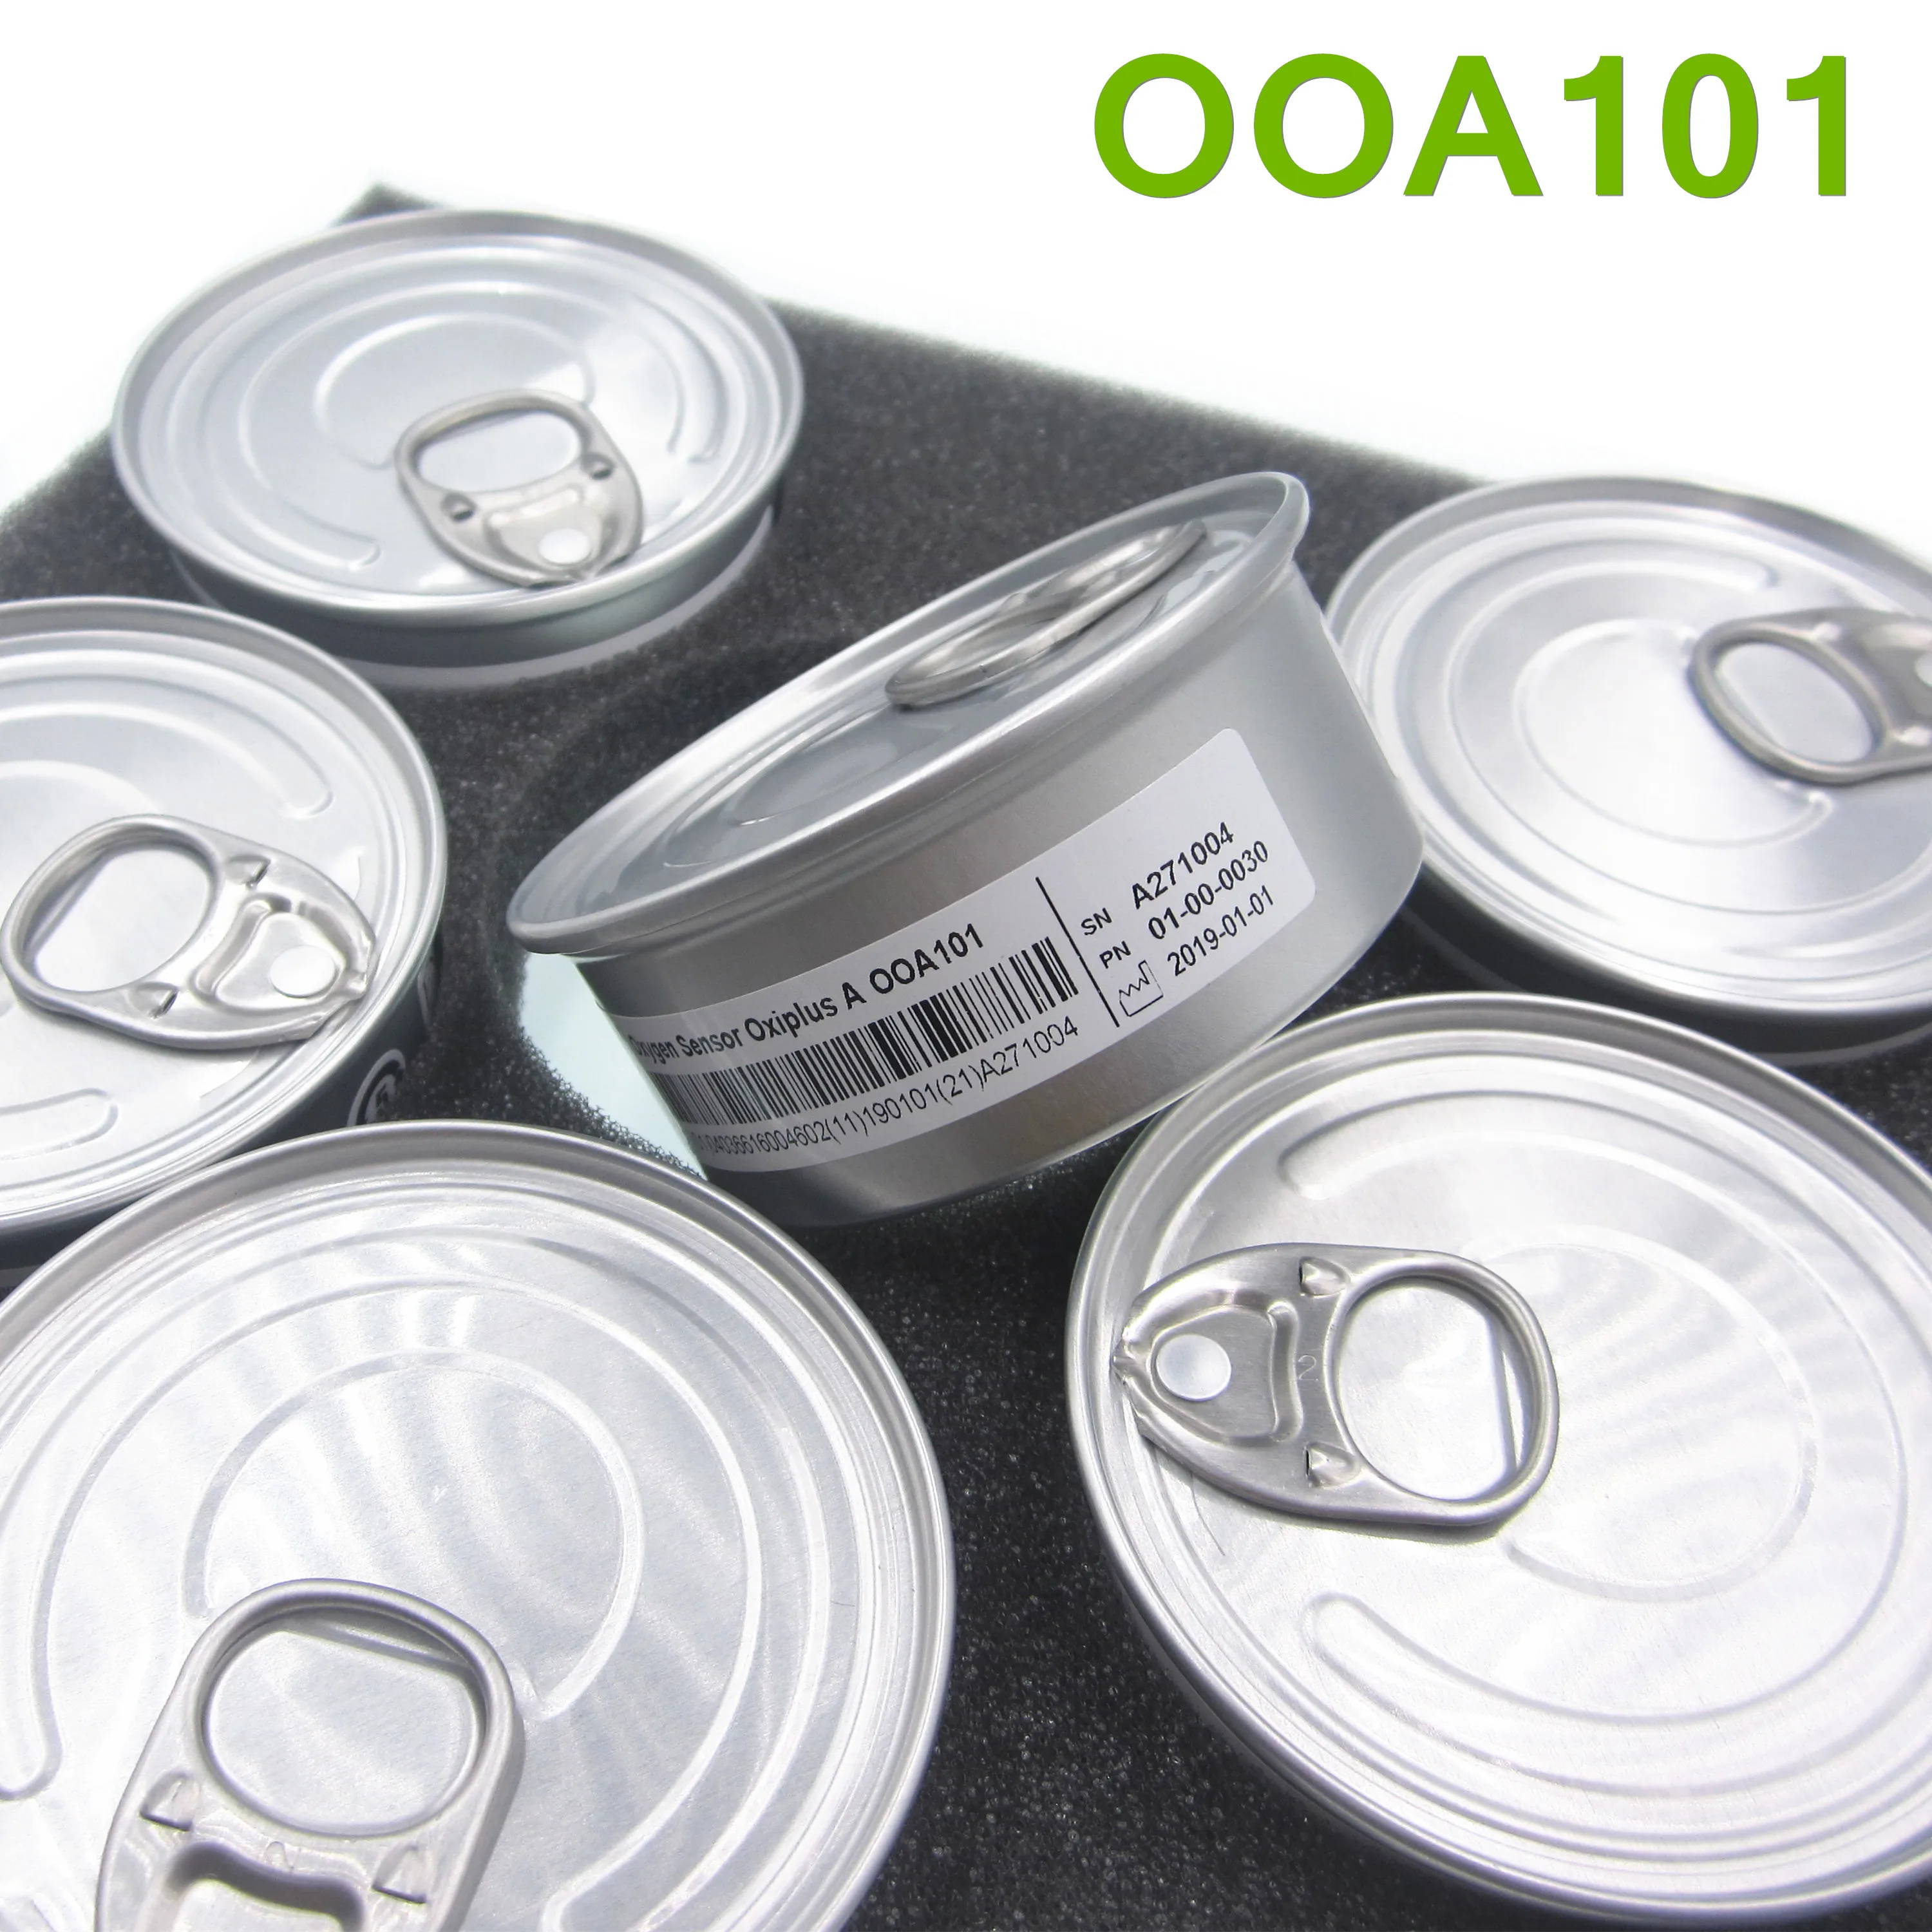 OOA101 алюминиевый датчик кислорода в коробке с длительным сроком службы OOA101 00A101 ENVITEC кислородный датчик Oxiplus подлинный 00A101